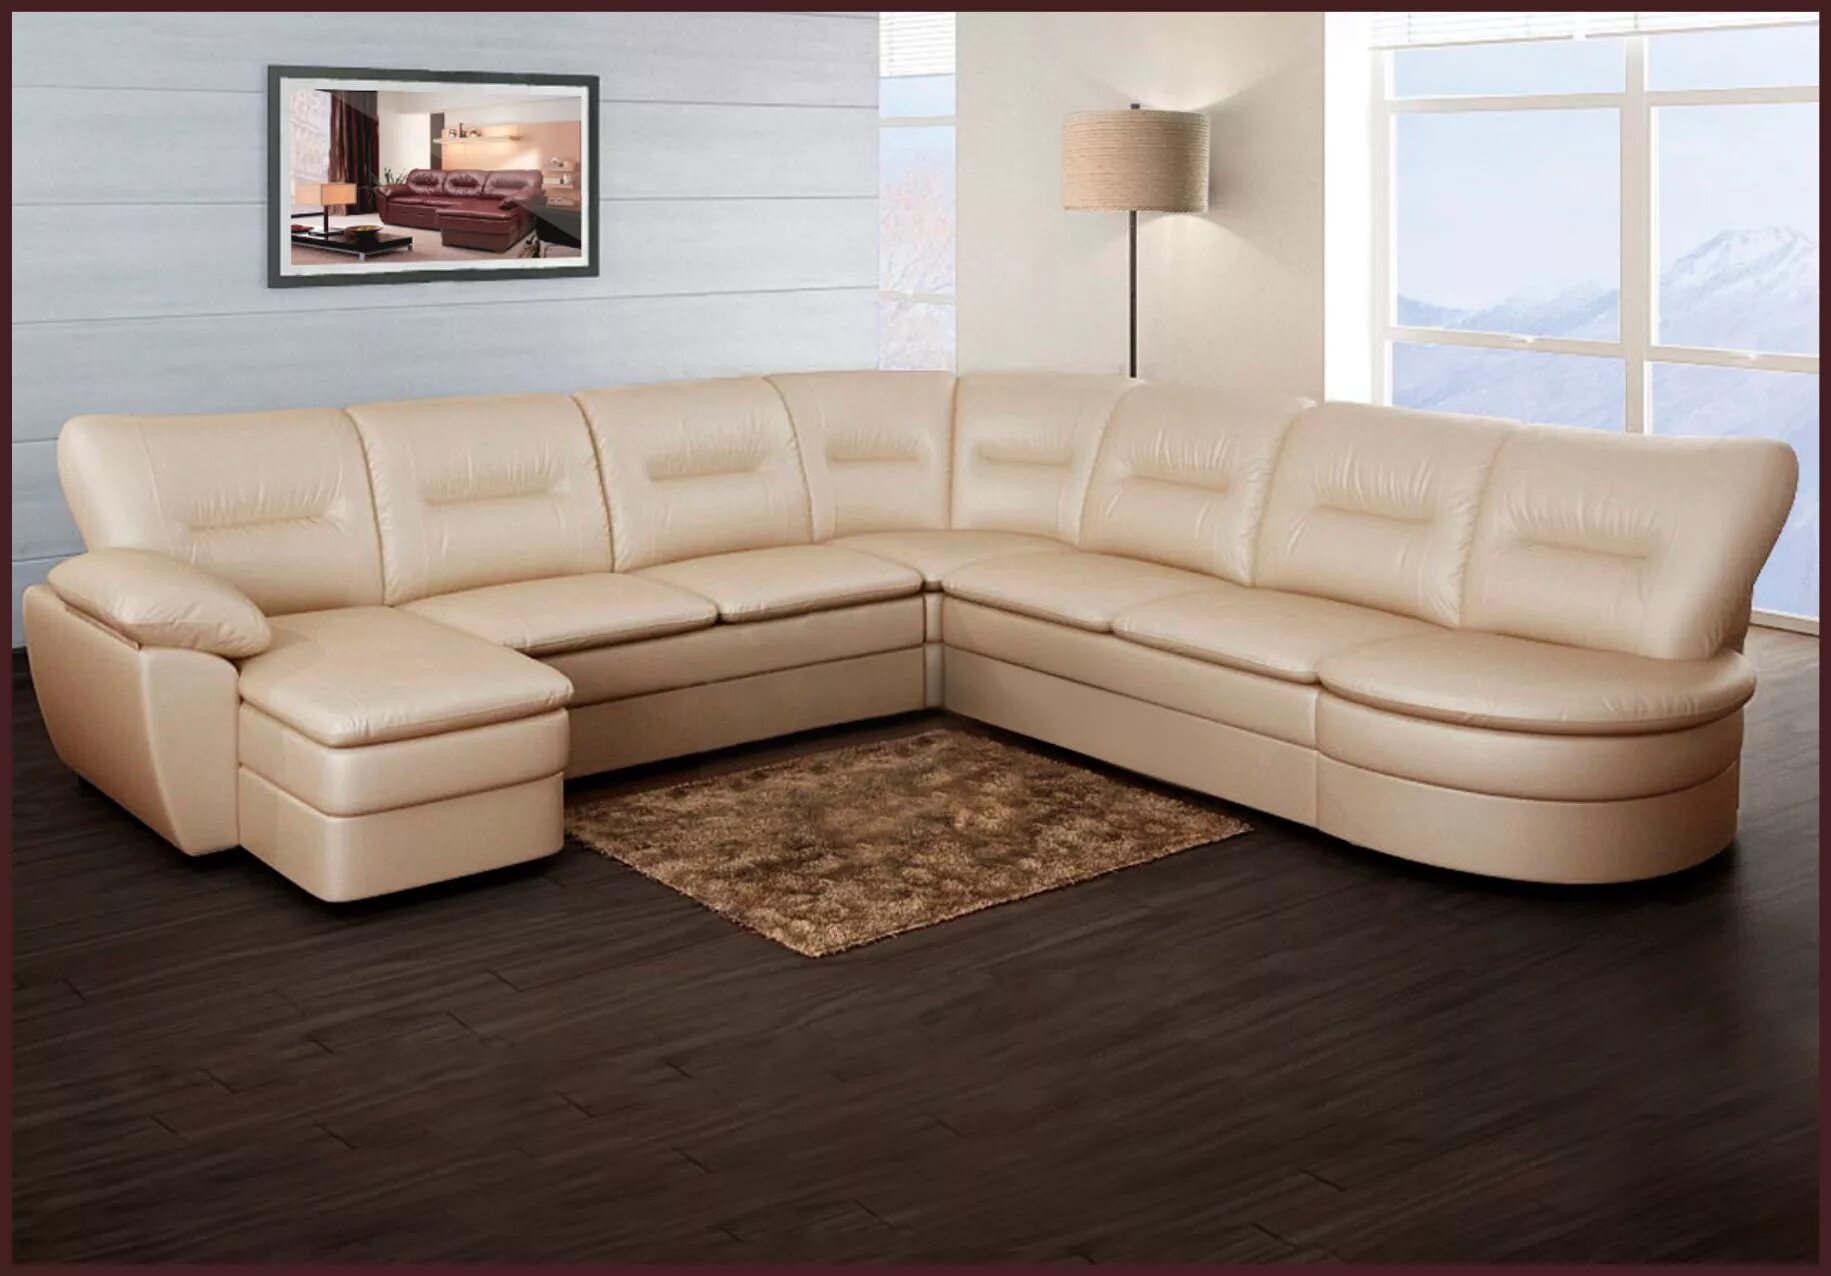 Угловые диваны хорошего качества. Модульный диван. Угловая мягкая мебель. Диван угловой мягкий. Диван угловой большой.